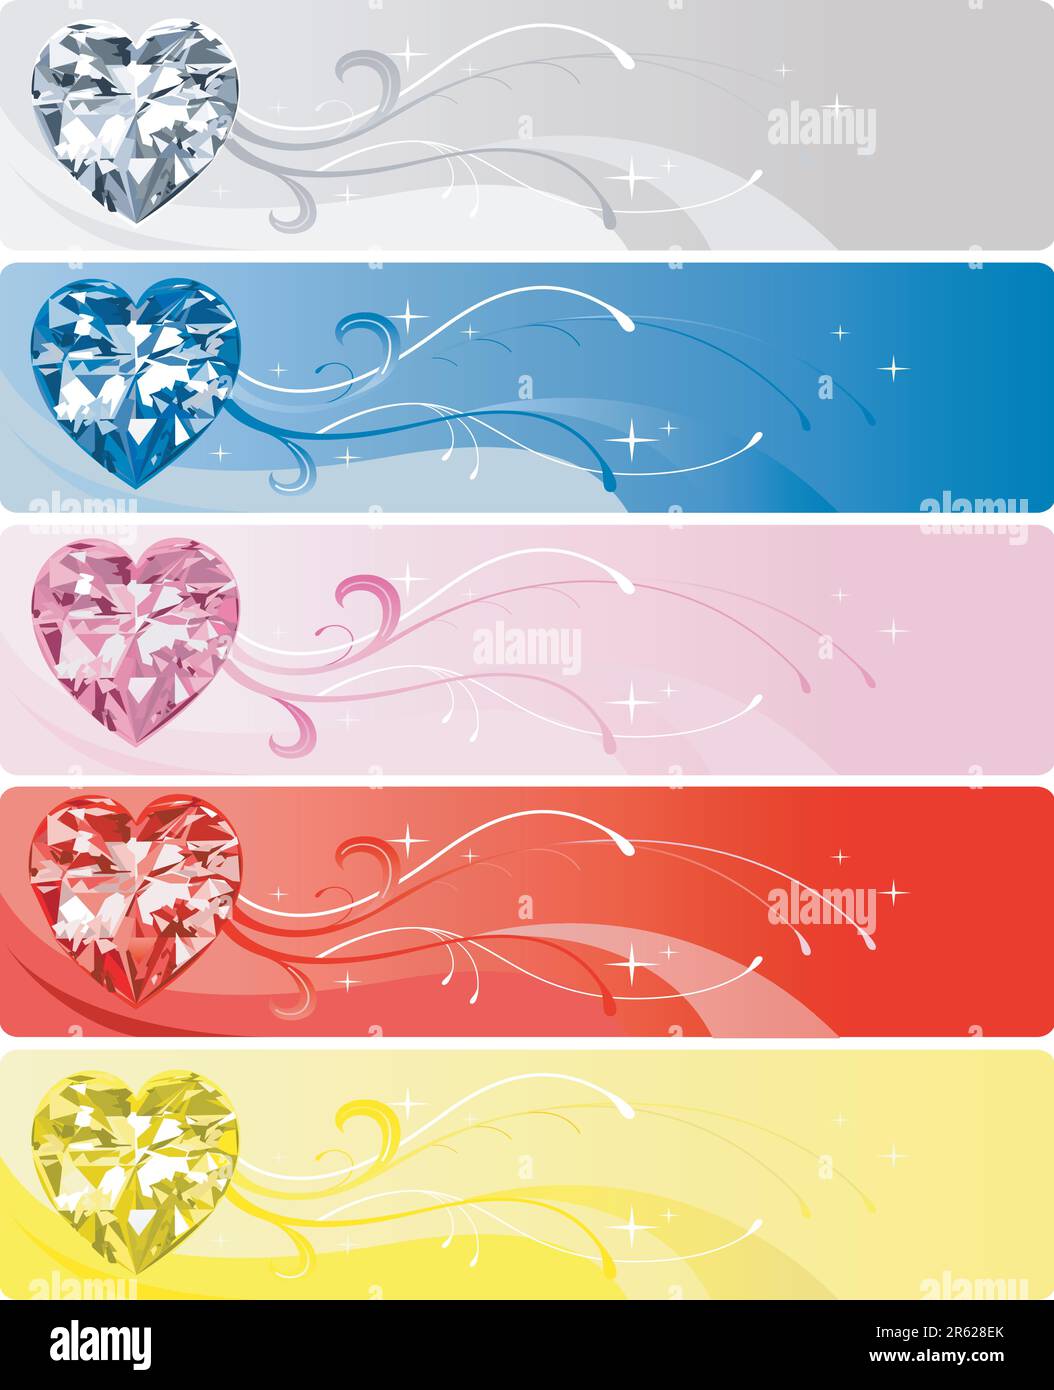 Illustrazione vettoriale di 5 Diamante o cuore di cristallo di banner. Illustrazione Vettoriale